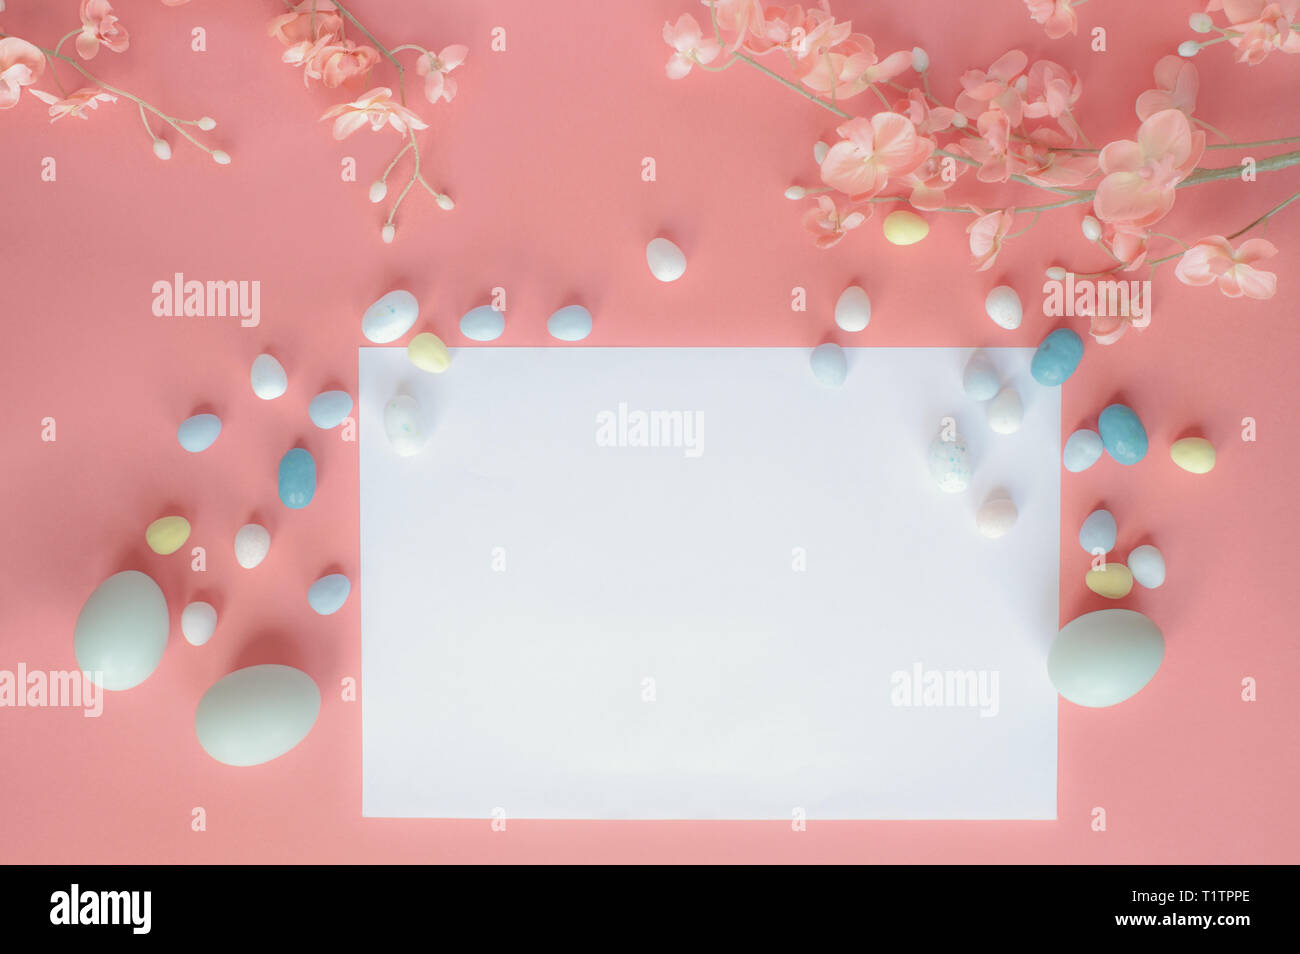 Pastell Ostereier, Malz Bonbon, Schokolade, Eier, und Blüten über einen Coral farbigen Hintergrund mit einer leeren Karte zu kopieren. Stockfoto